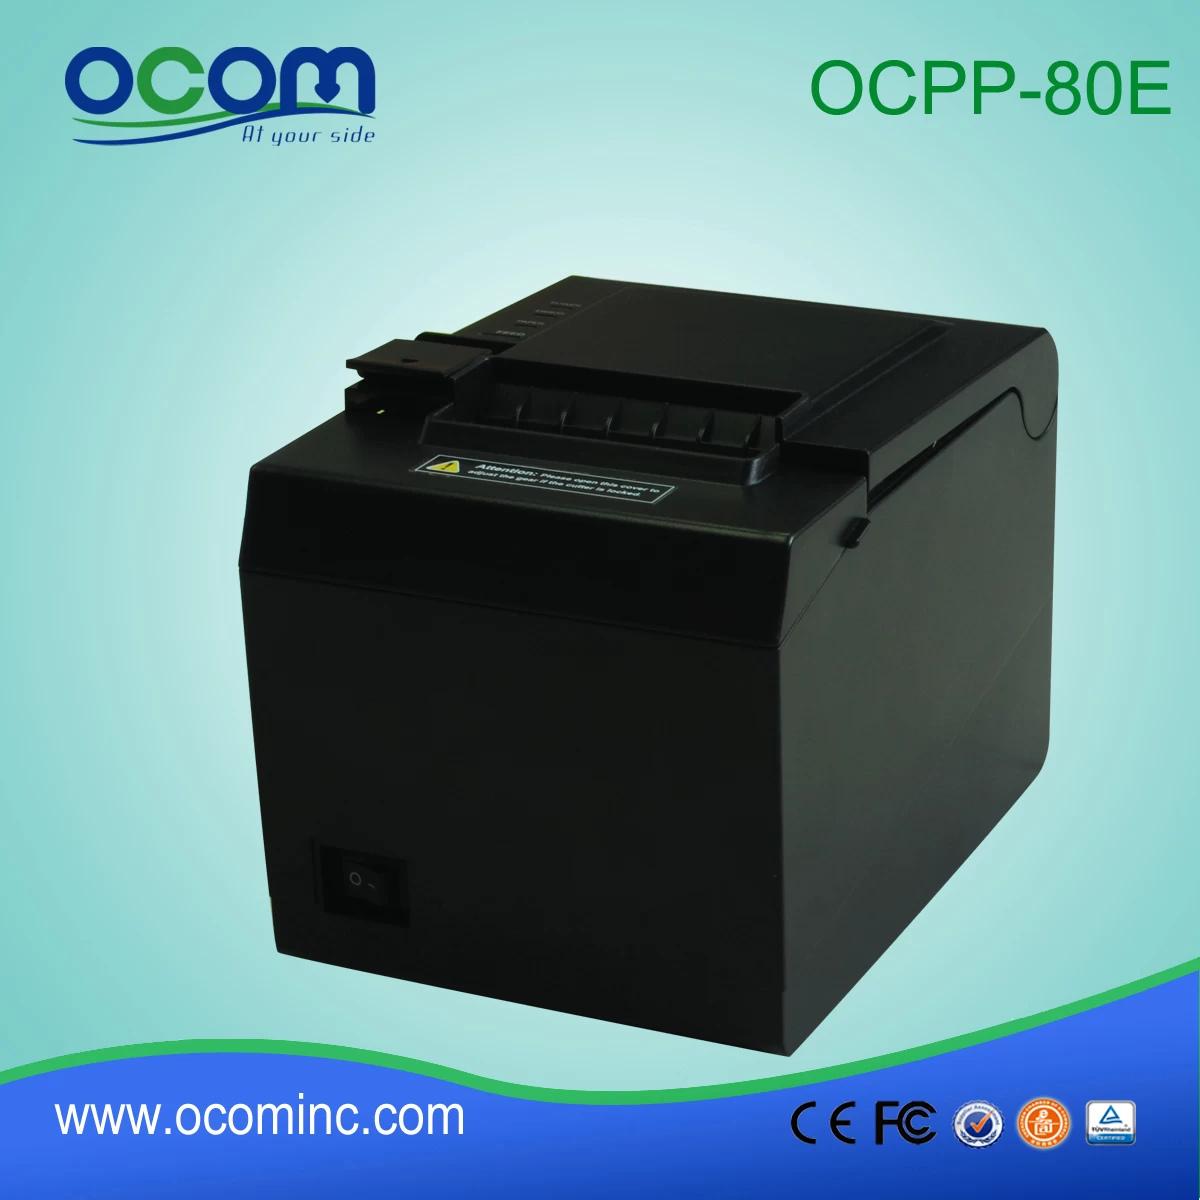 OCPP-80E----China made 80mm POS receipt printer